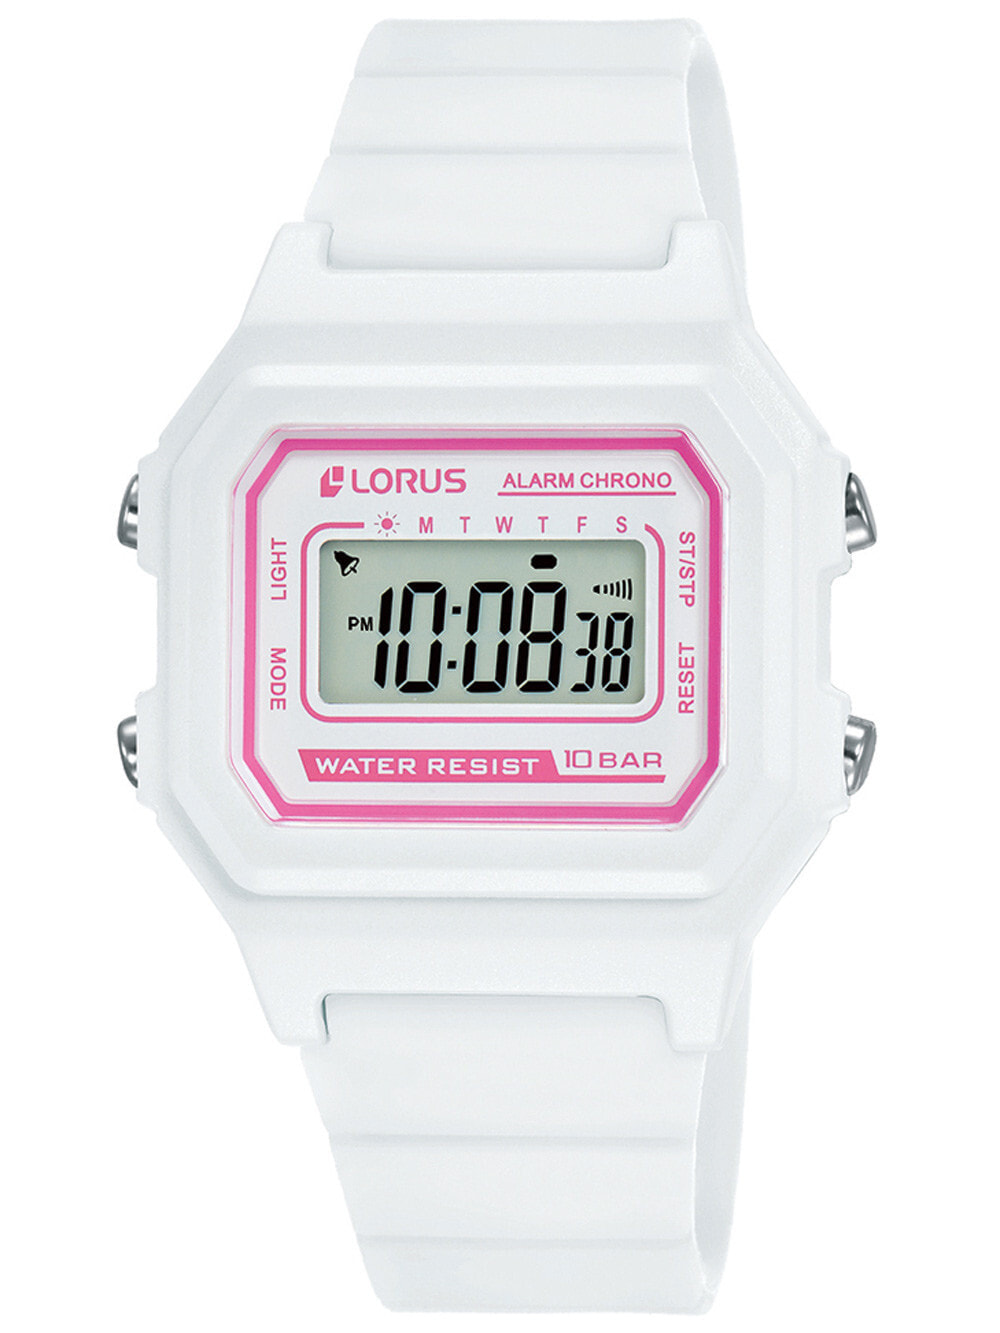 Детские наручные часы для девочек Lorus R2321NX9 digital kids watch 31mm 10ATM